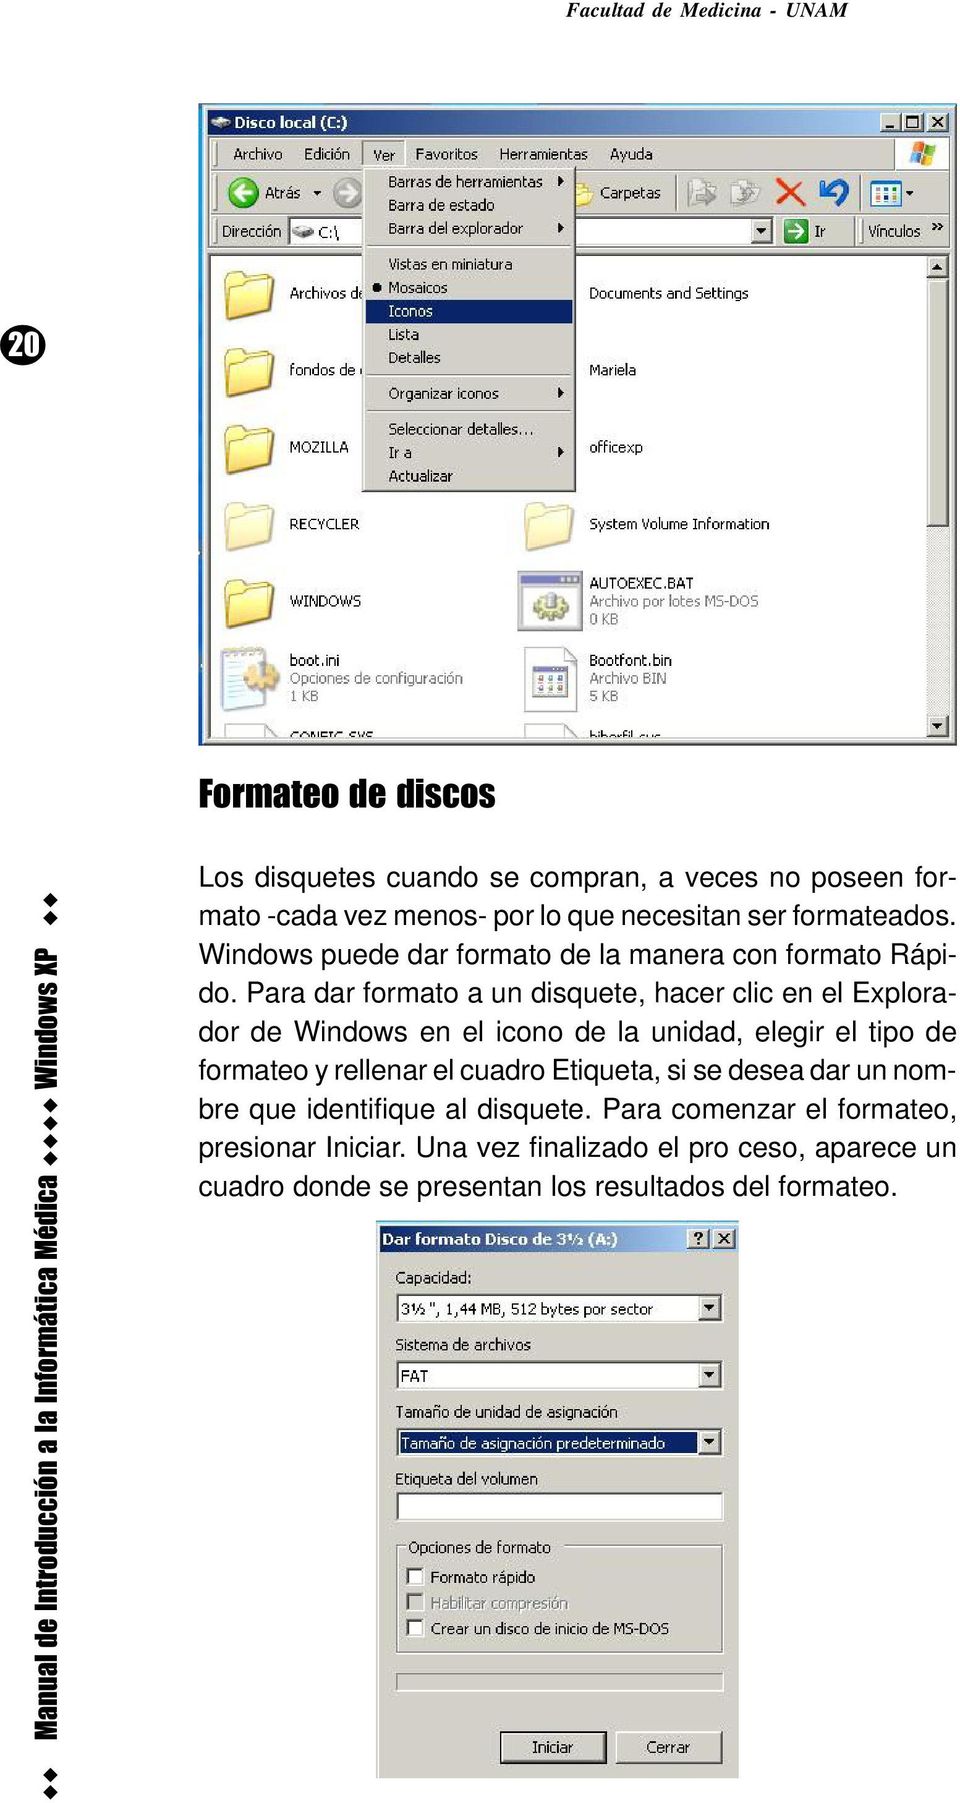 Para dar formato a un disquete, hacer clic en el Explorador de Windows en el icono de la unidad, elegir el tipo de formateo y rellenar